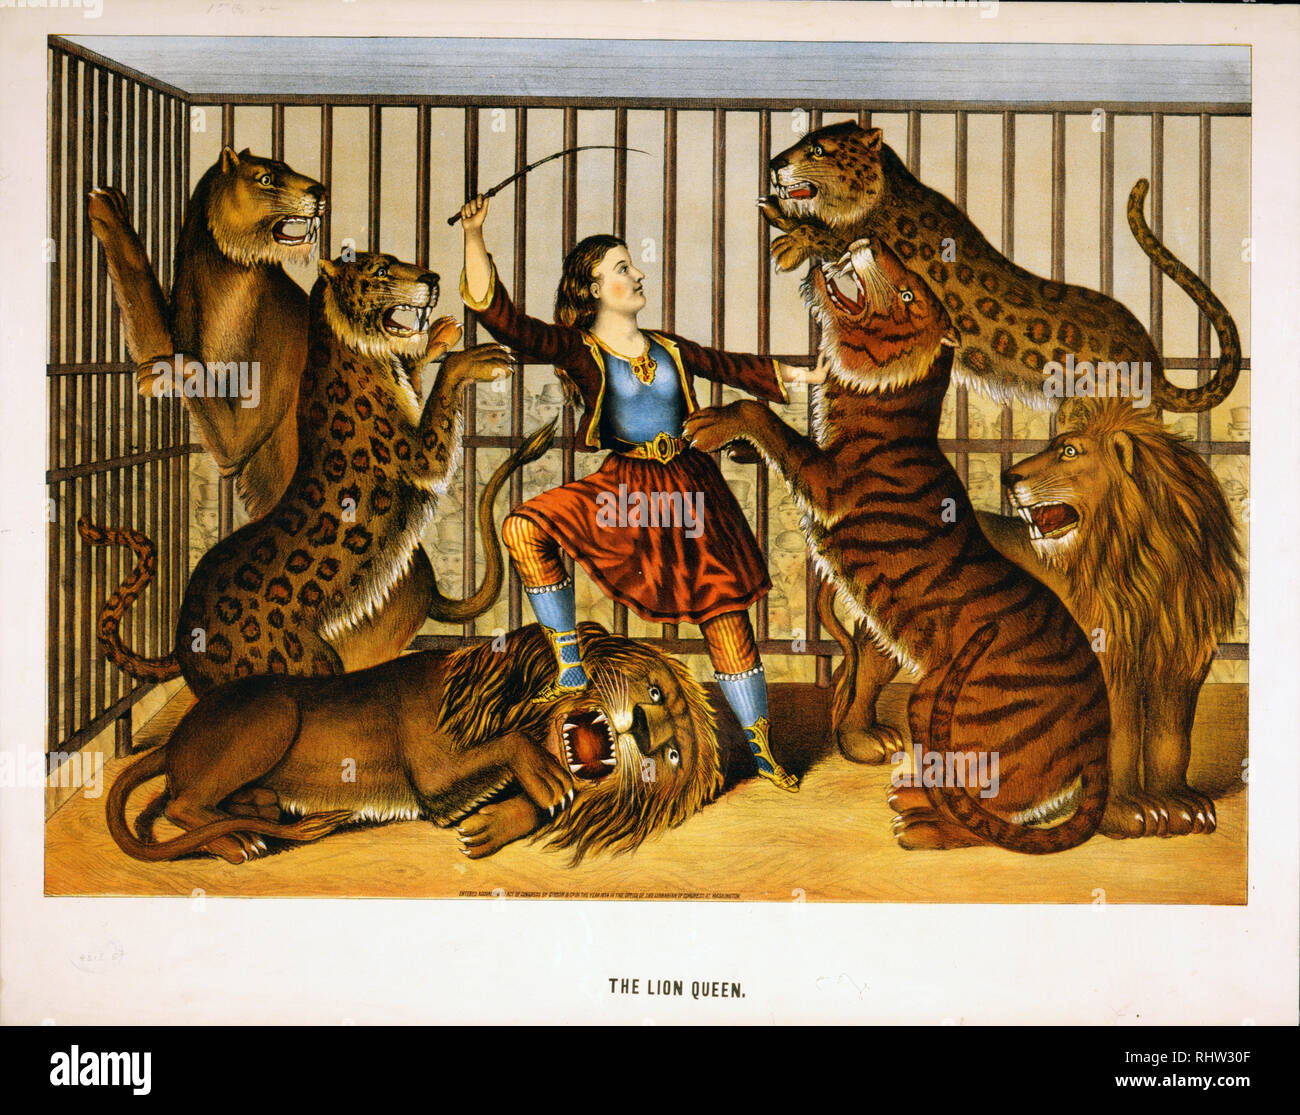 Der Lowe Frau Drucken Zeigt Eine Frau Von Lion Tamer In Einem Kafig Mit Mehreren Lowen Und Tiger Ca 1874 Stockfotografie Alamy